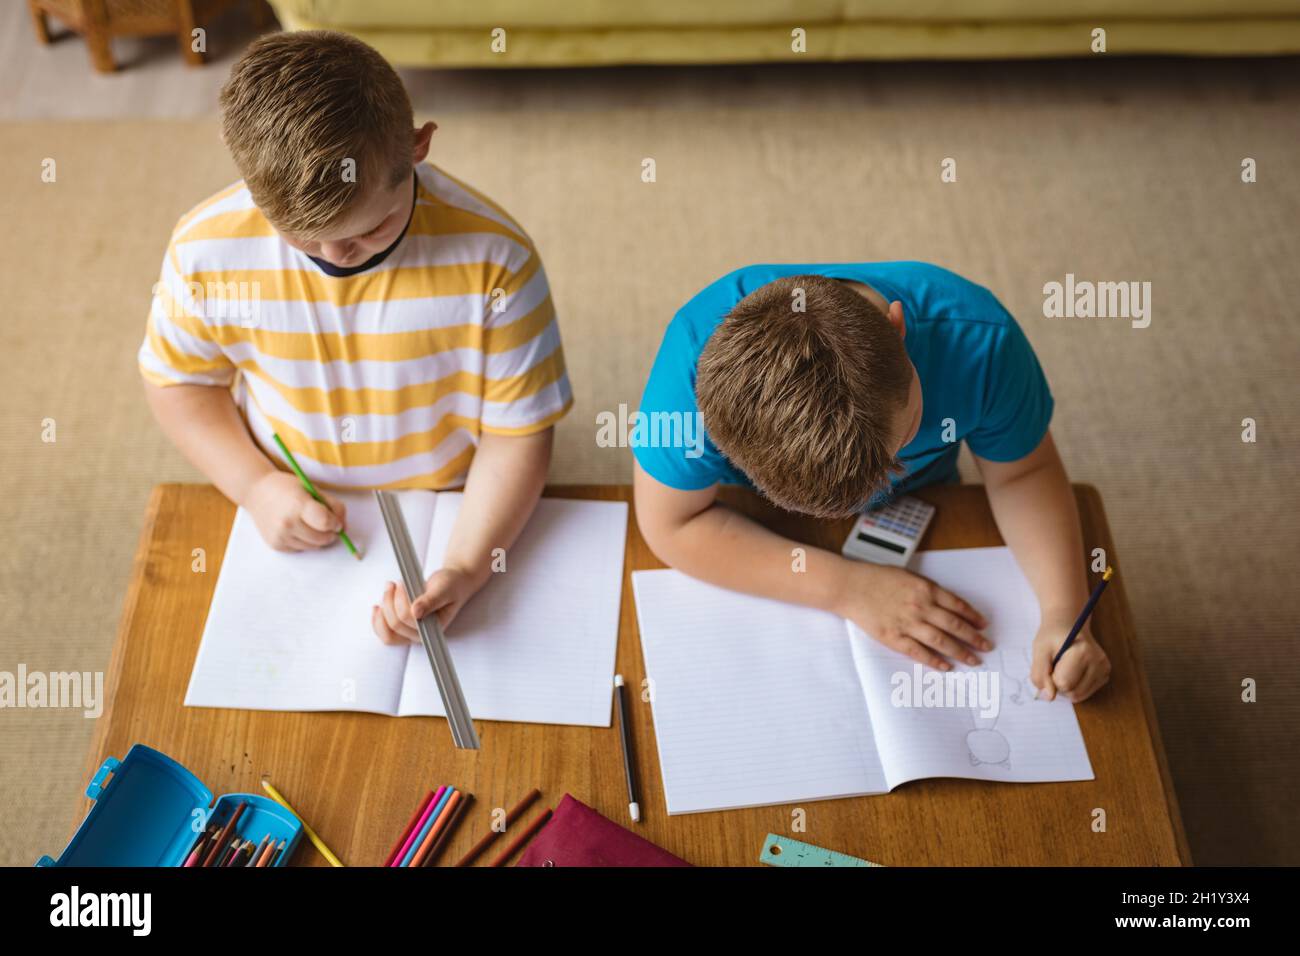 Vue en hauteur de deux garçons caucasiens qui dessinant dans leurs livres, assis dans le salon à la maison Banque D'Images